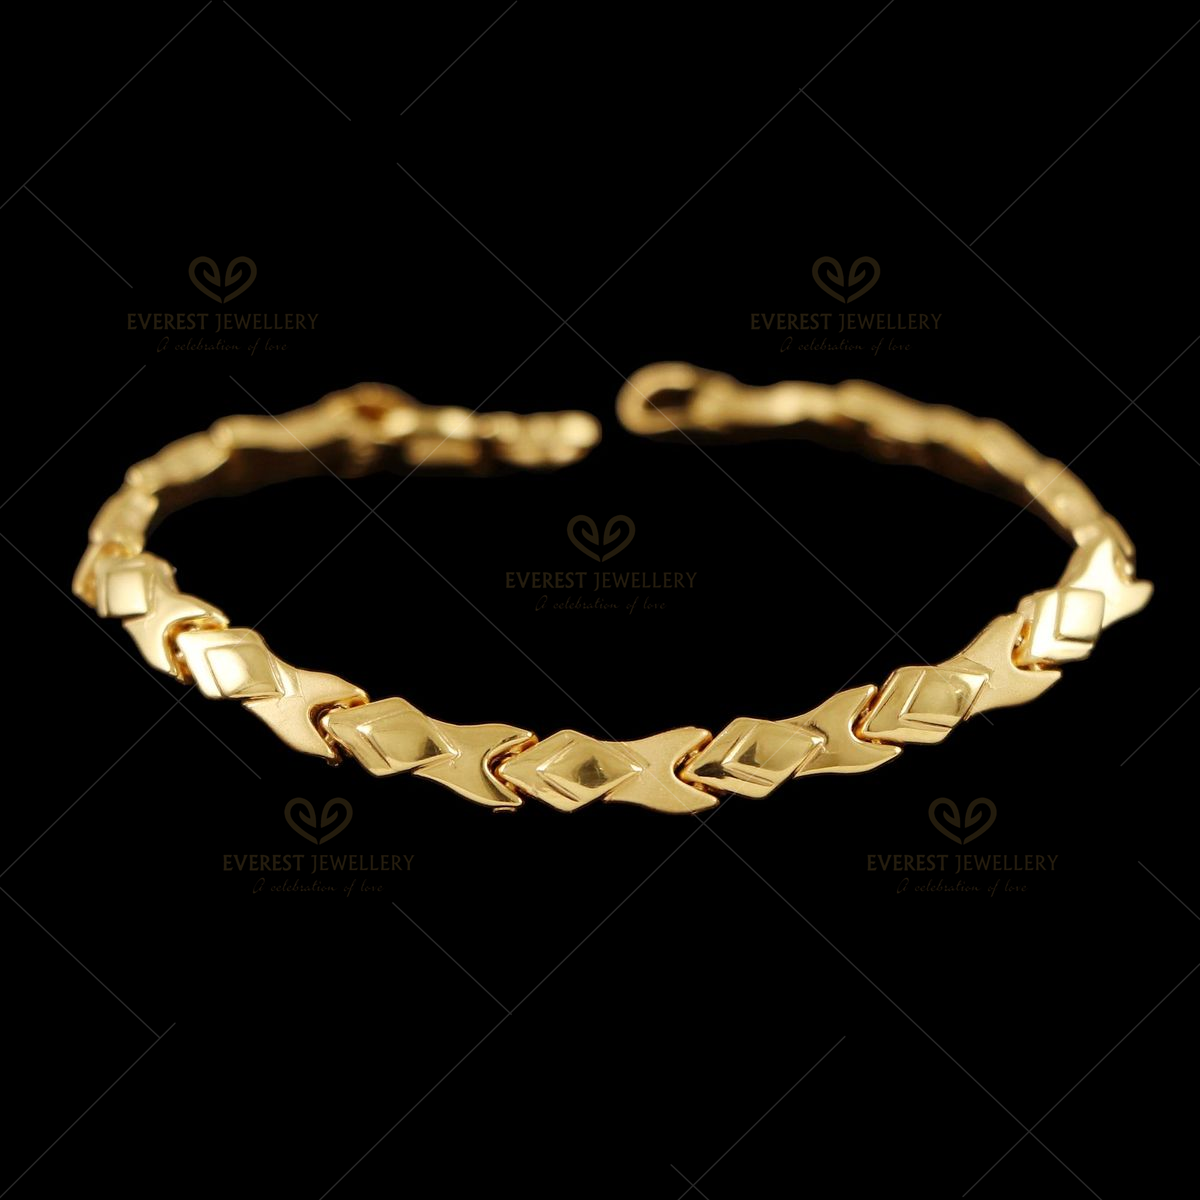 Buy Memoir 24KT Gold plated Snake chain design, Bracelet for Men and Women  at Amazon.in